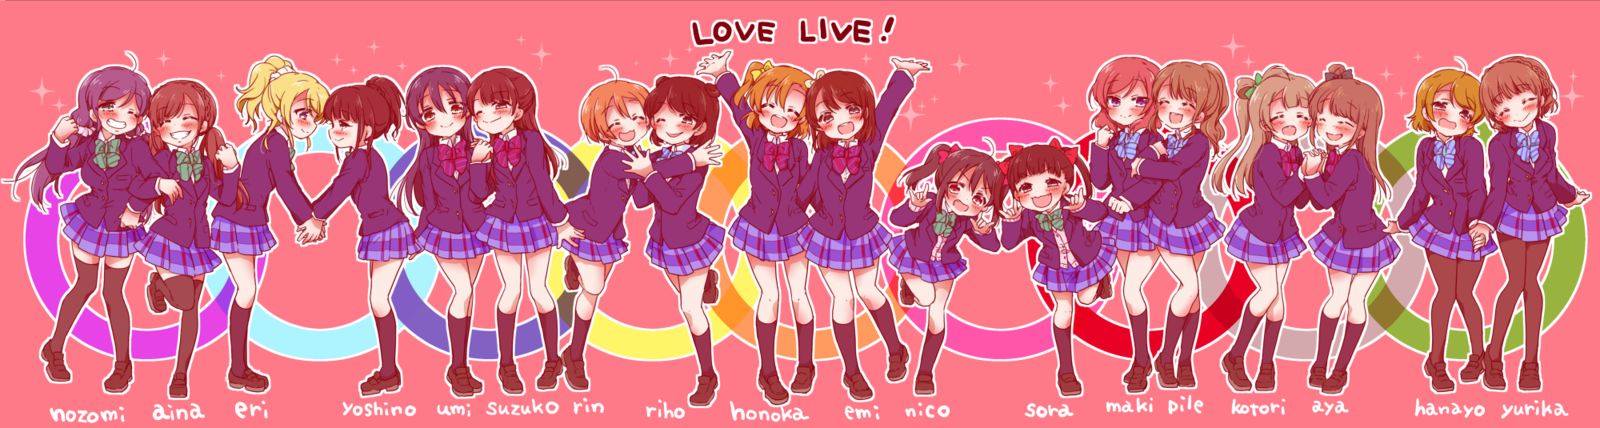 LoveLiveforever-Love Live!μ's